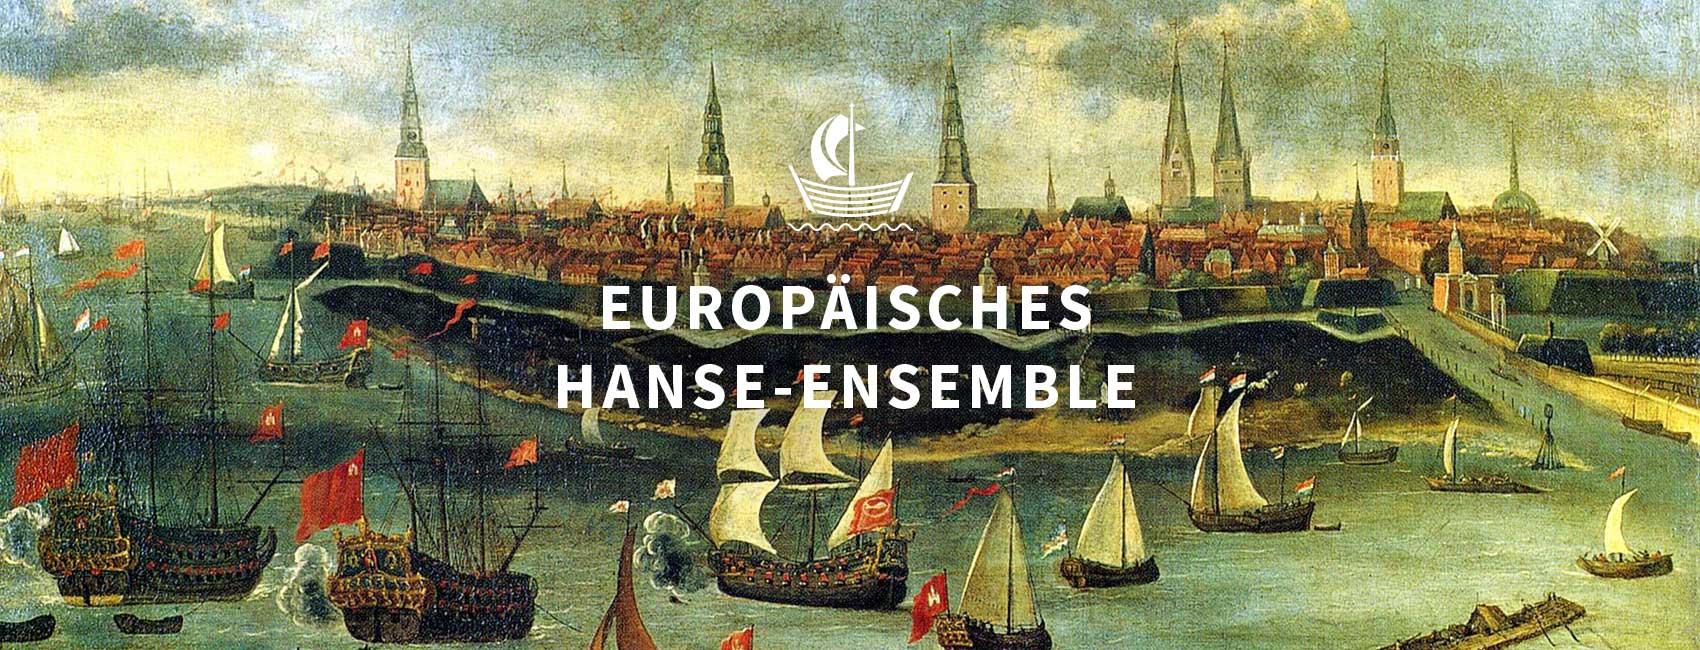 hanse-ensemble-03-DE